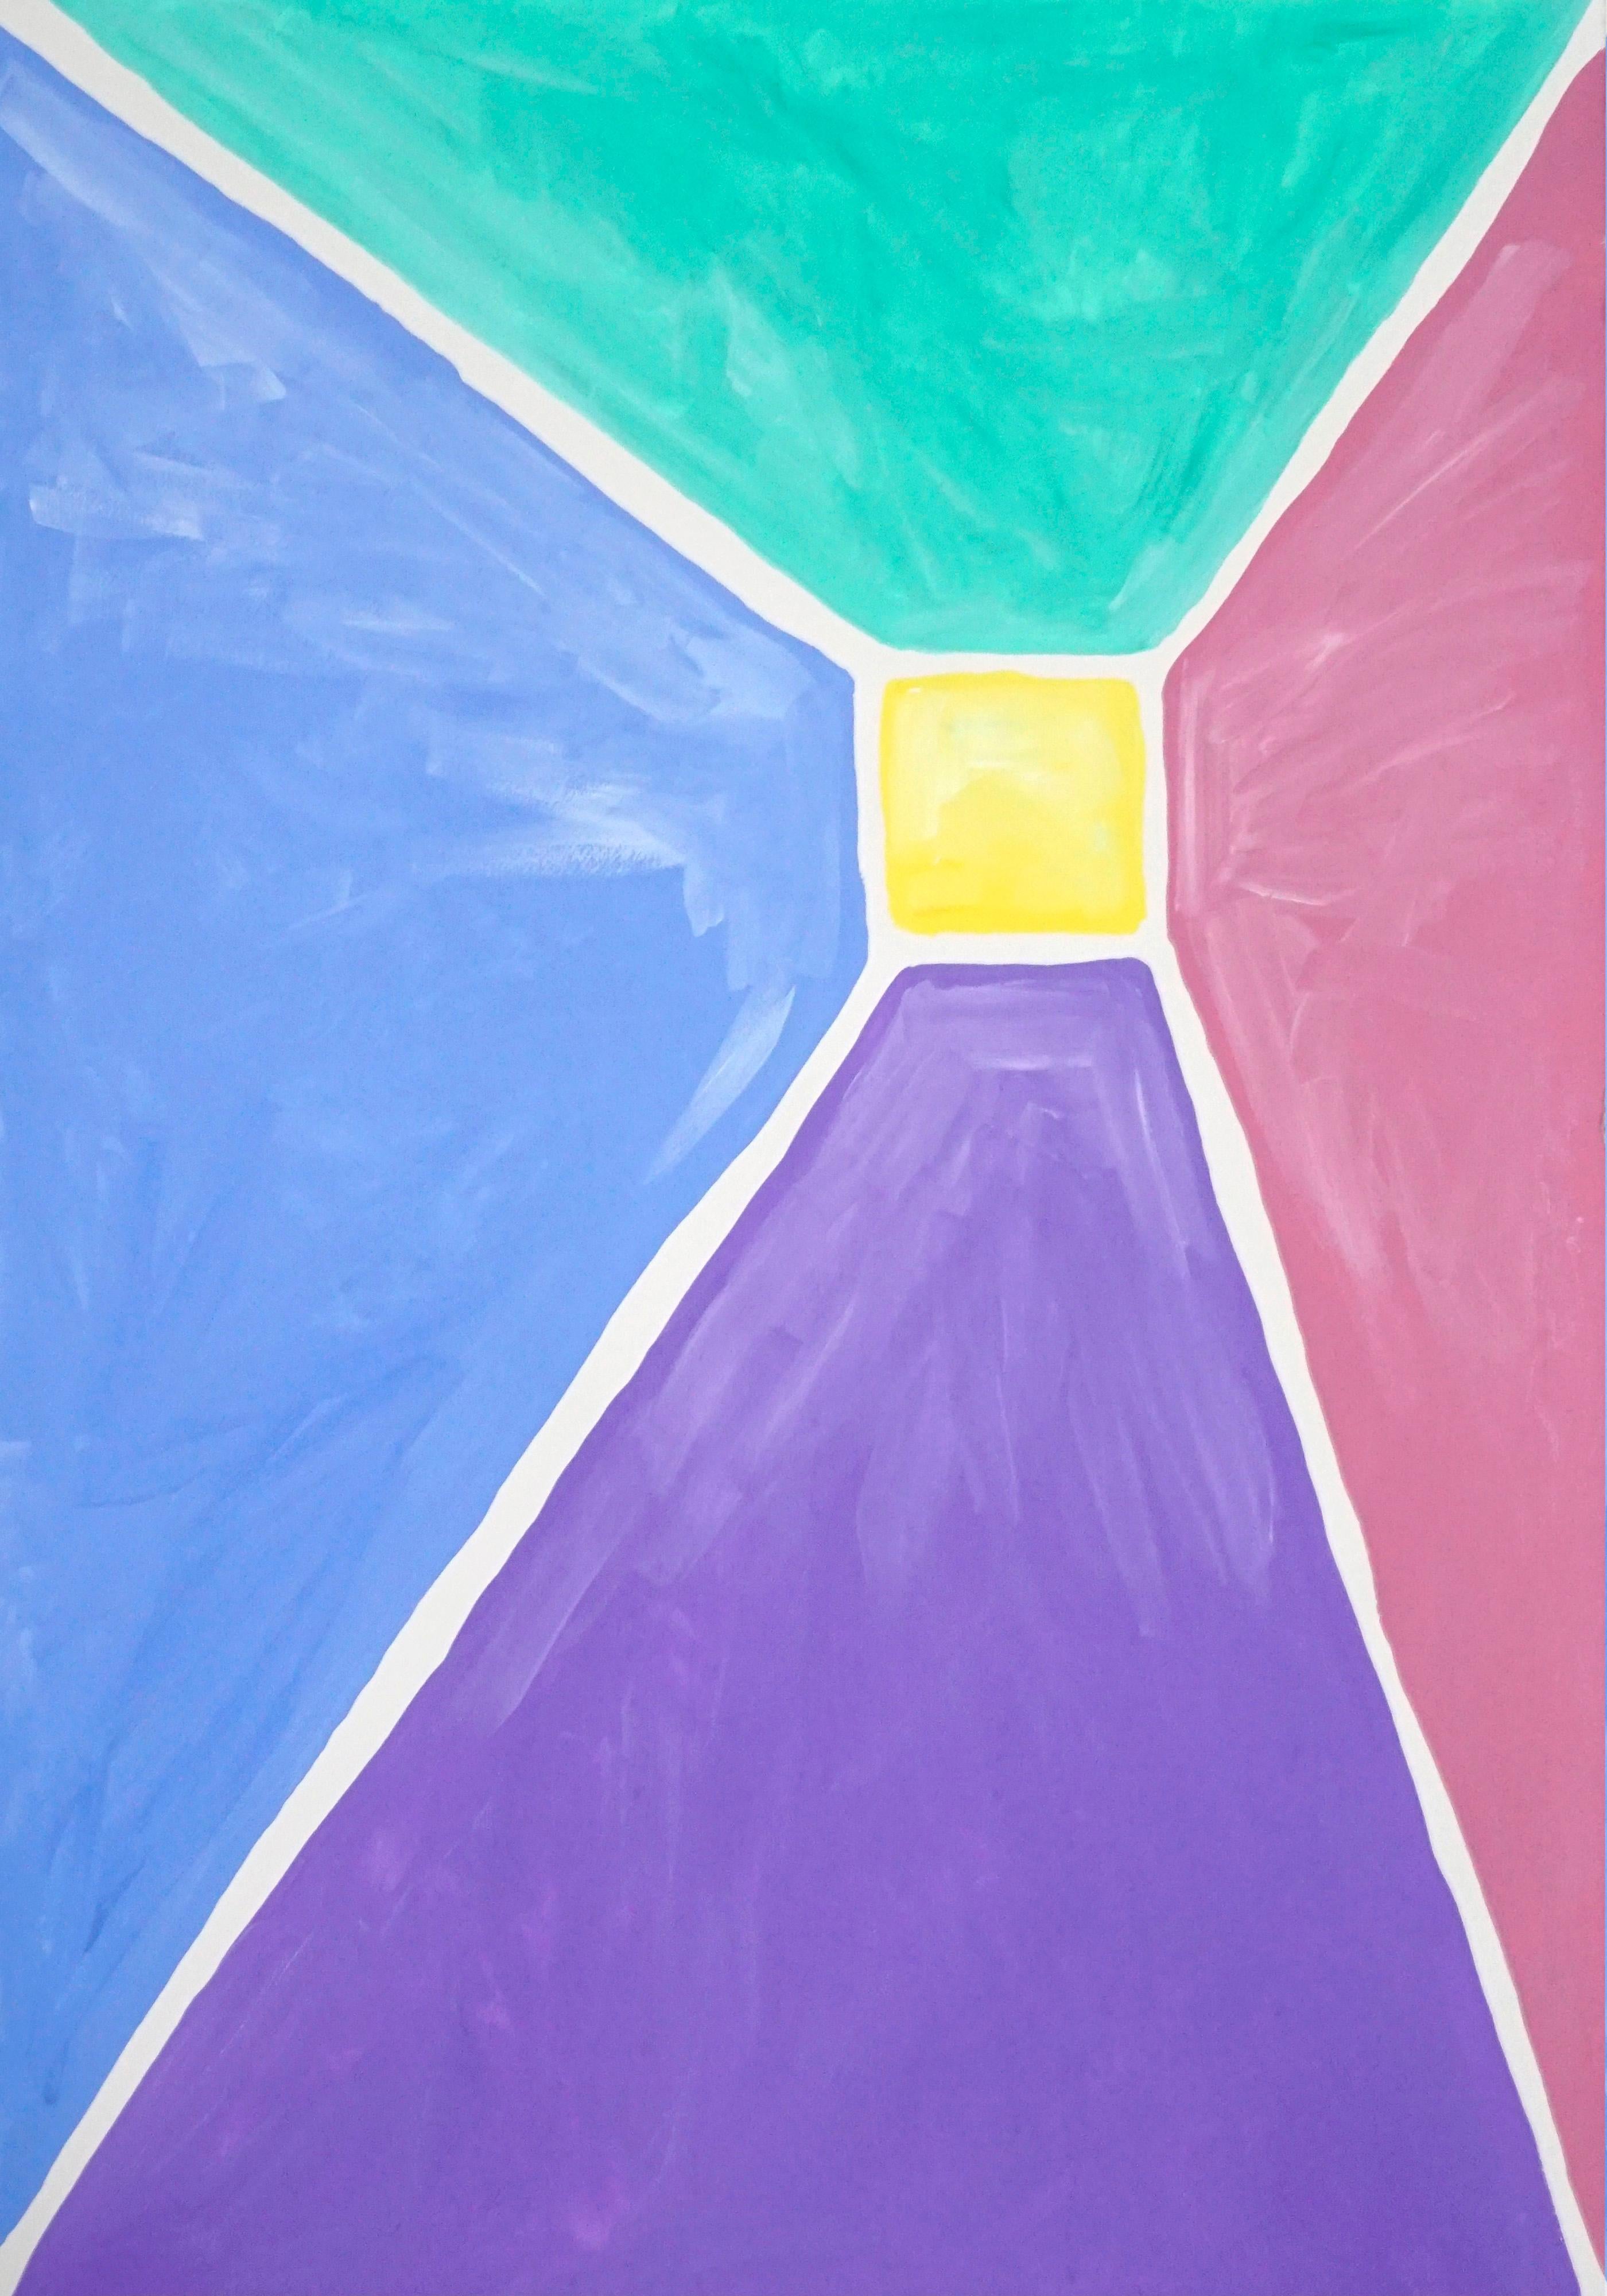 Diptyque pyramidal aux tons pastel, peinture acrylique sur papier, géométrique abstraite  - Violet Still-Life Painting par Natalia Roman